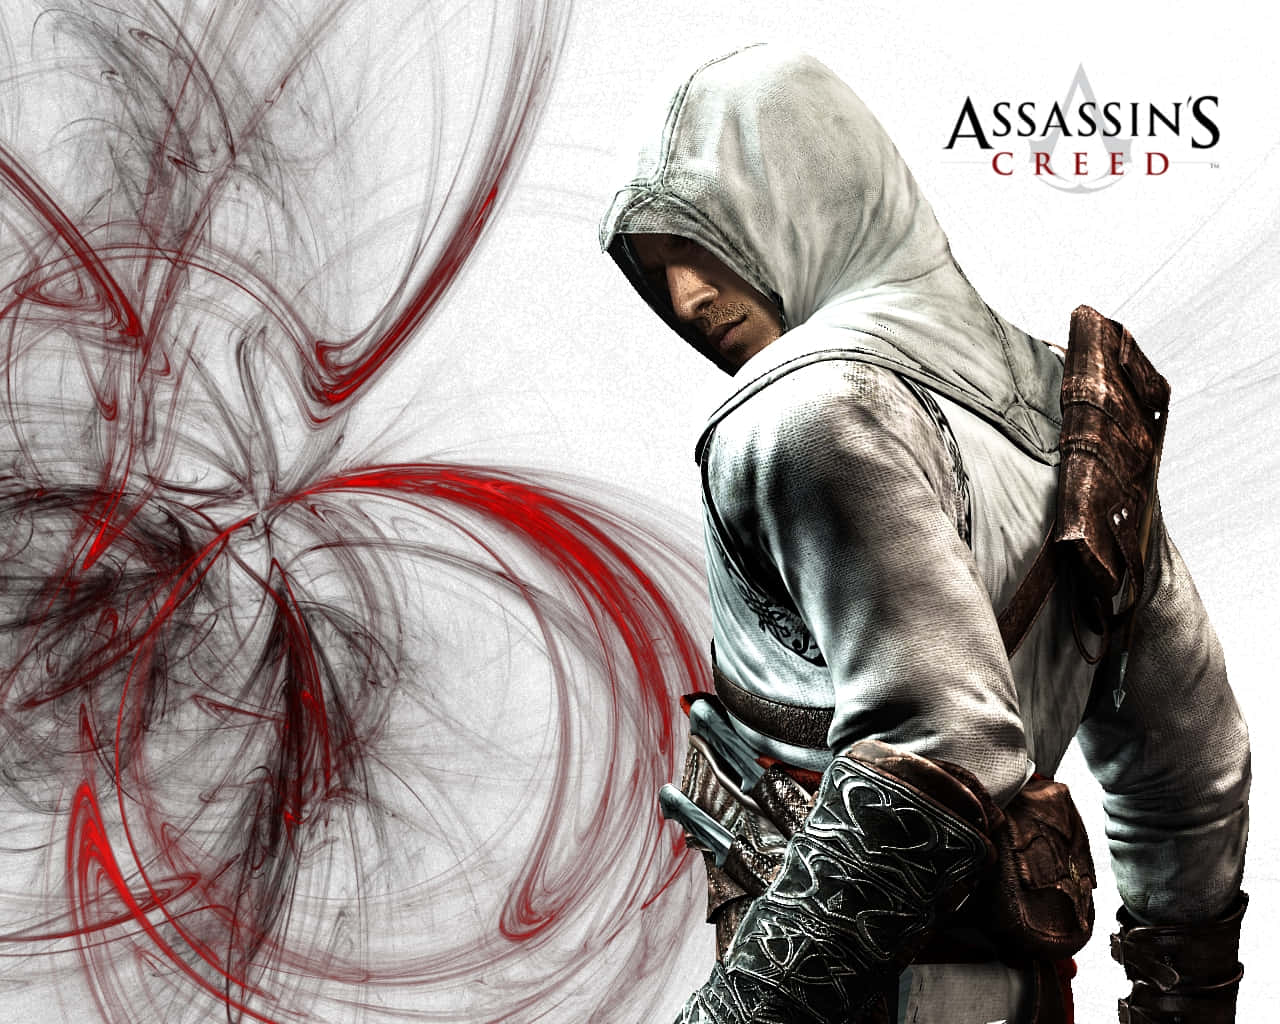 Textoaltair, El Legendario Asesino De Assassin's Creed. Fondo de pantalla